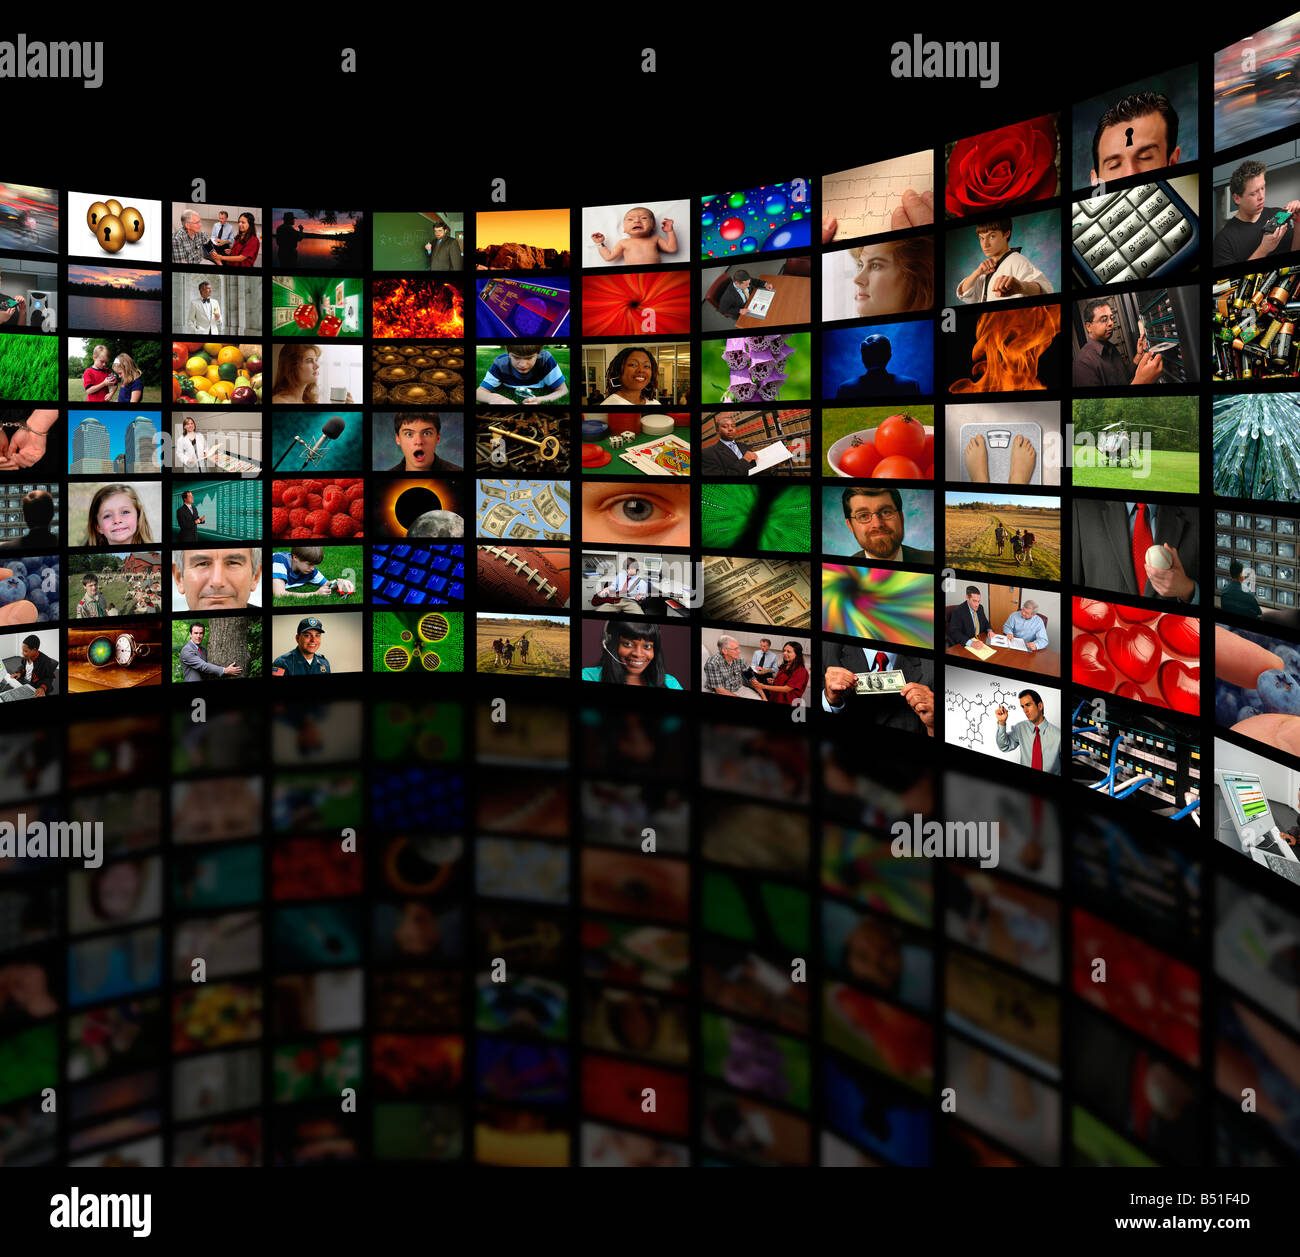 Galerie von Videomedien Kommunikationskanäle oder Fotografie auf eine gekrümmte Wand Stockfoto